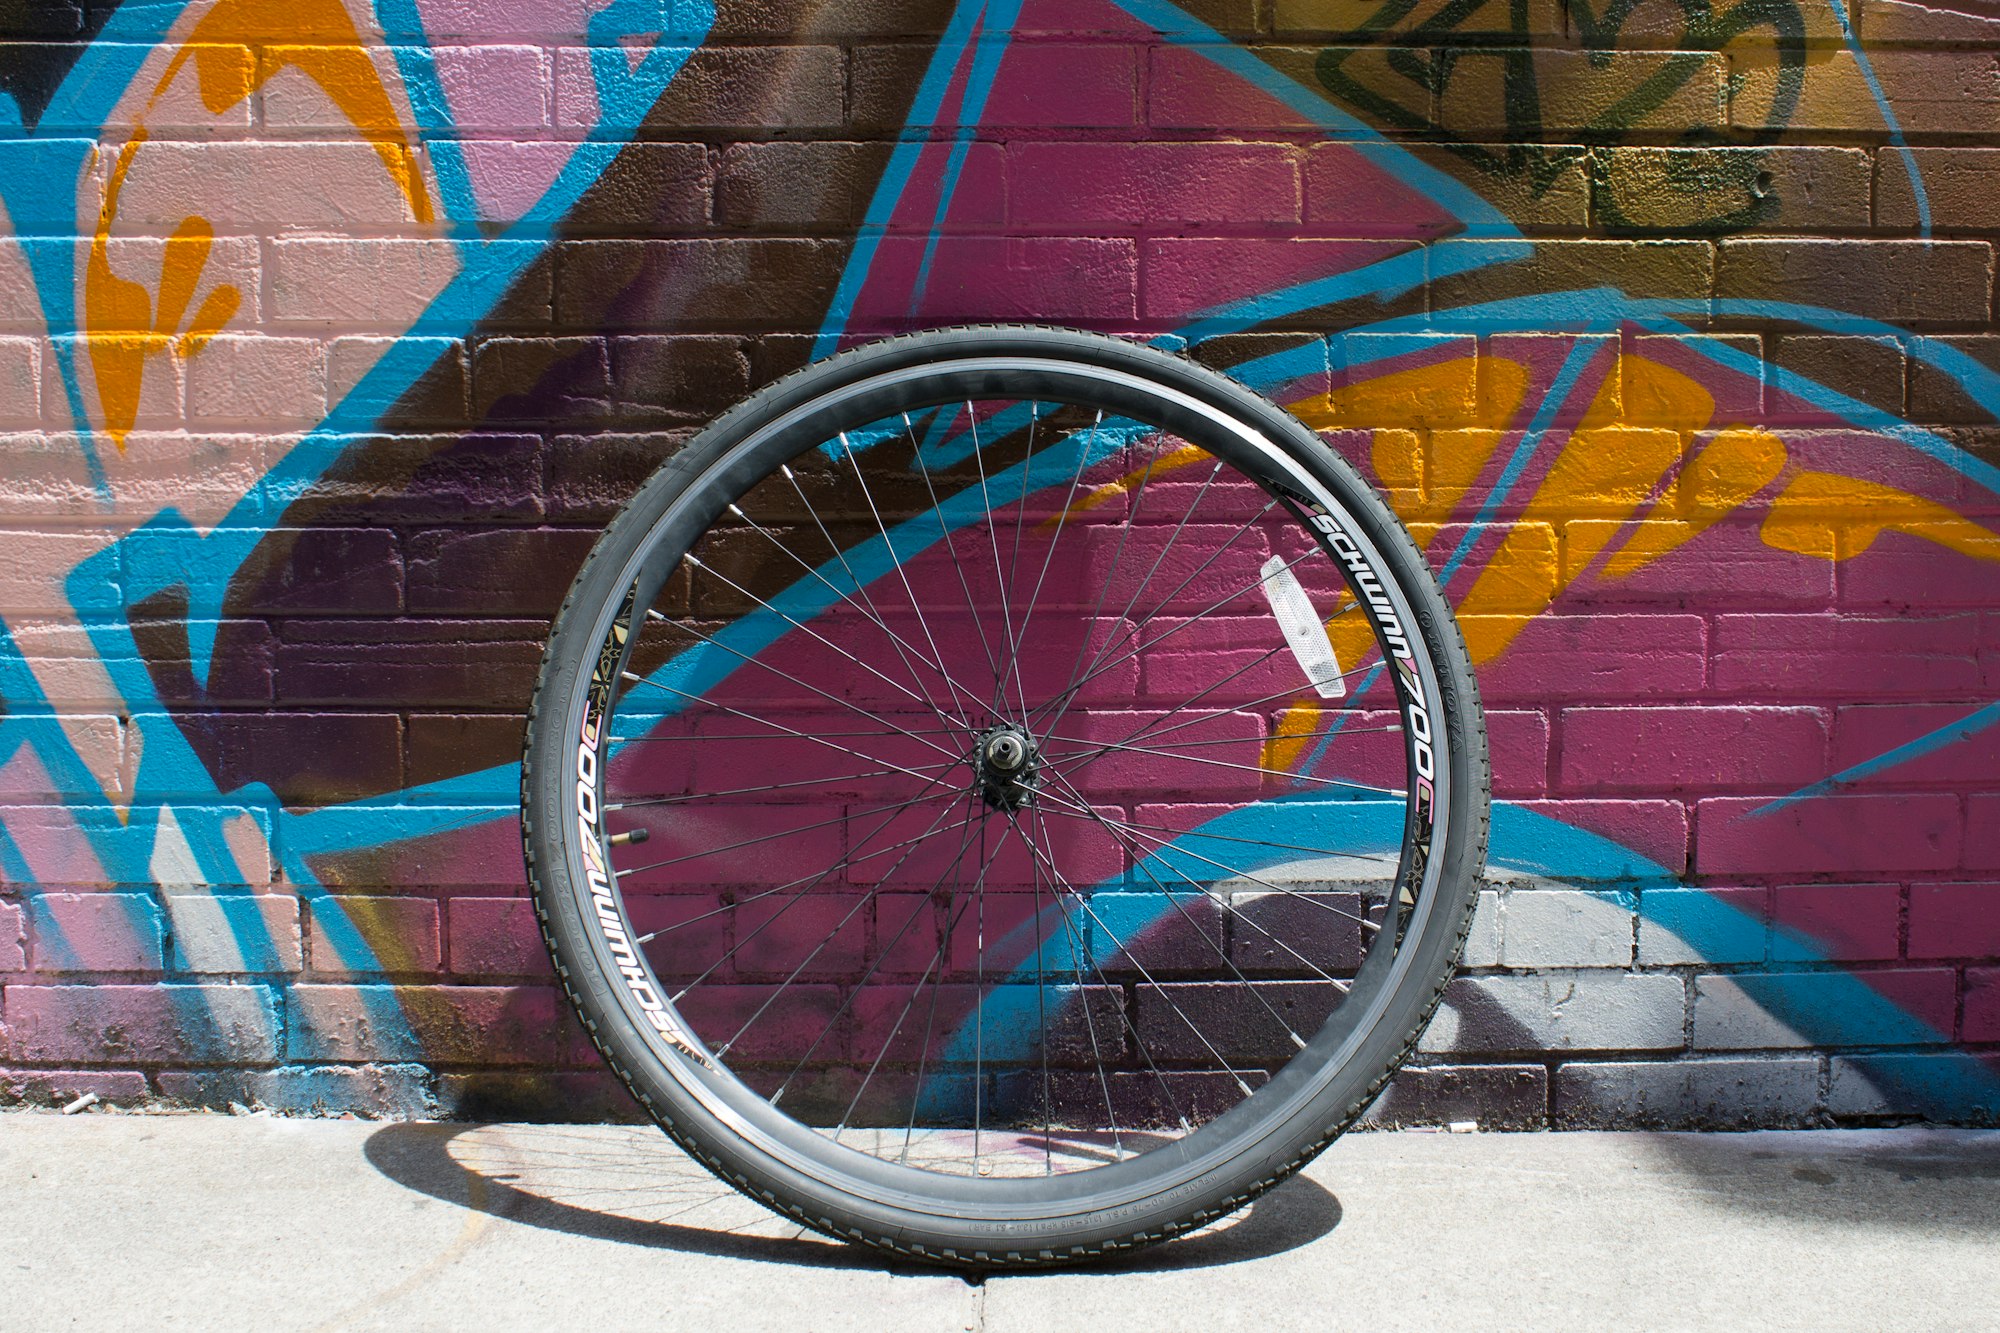 Slangeløse dæk - Hvad er fordelene? | buycycle